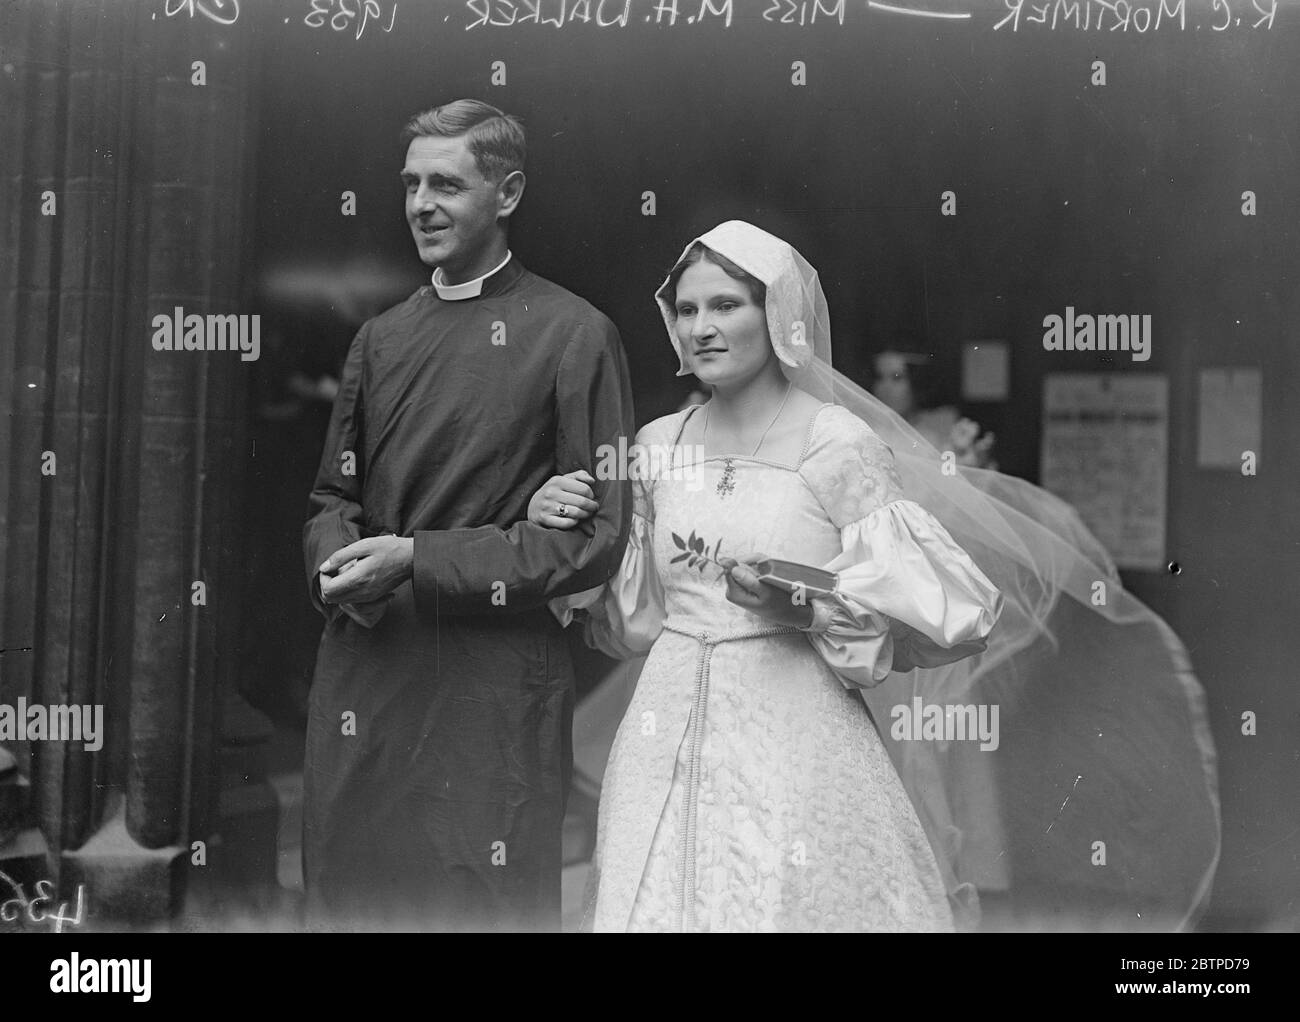 Eine klerikale Hochzeit . Die Ehe der Rev R C Mortimer und Miss M H Walker in St Mary Abbot 's, Kensington. Die Braut und der Bräutigam verlassen die Kirche. Die Braut trägt ein markantes mittelalterliches Kleid. 13 Juli 1933 Stockfoto